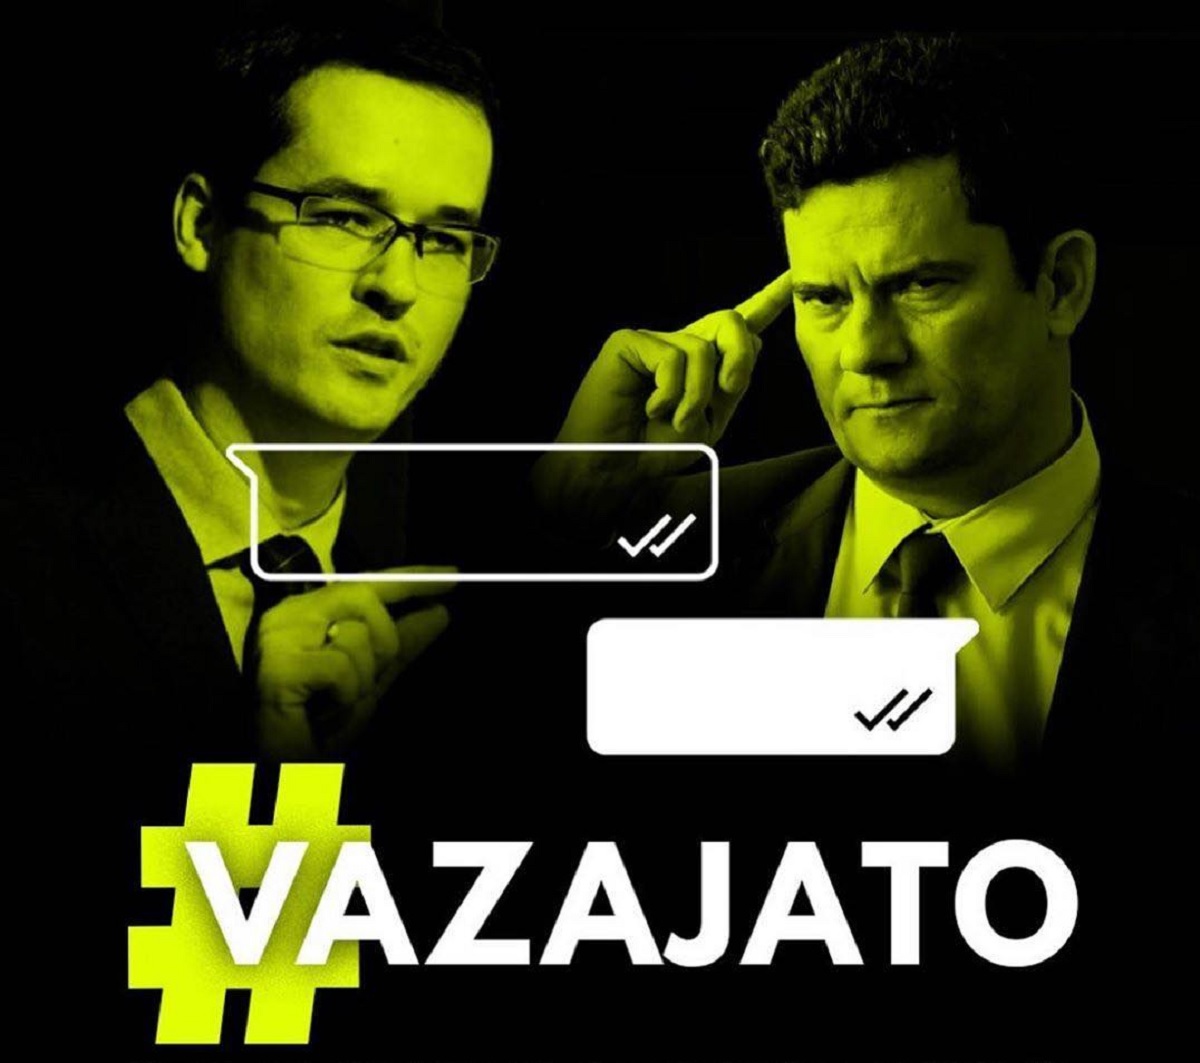 Bolsonarismo responde a furo sobre conluio na Lava-Jato com ameaças a Greenwald